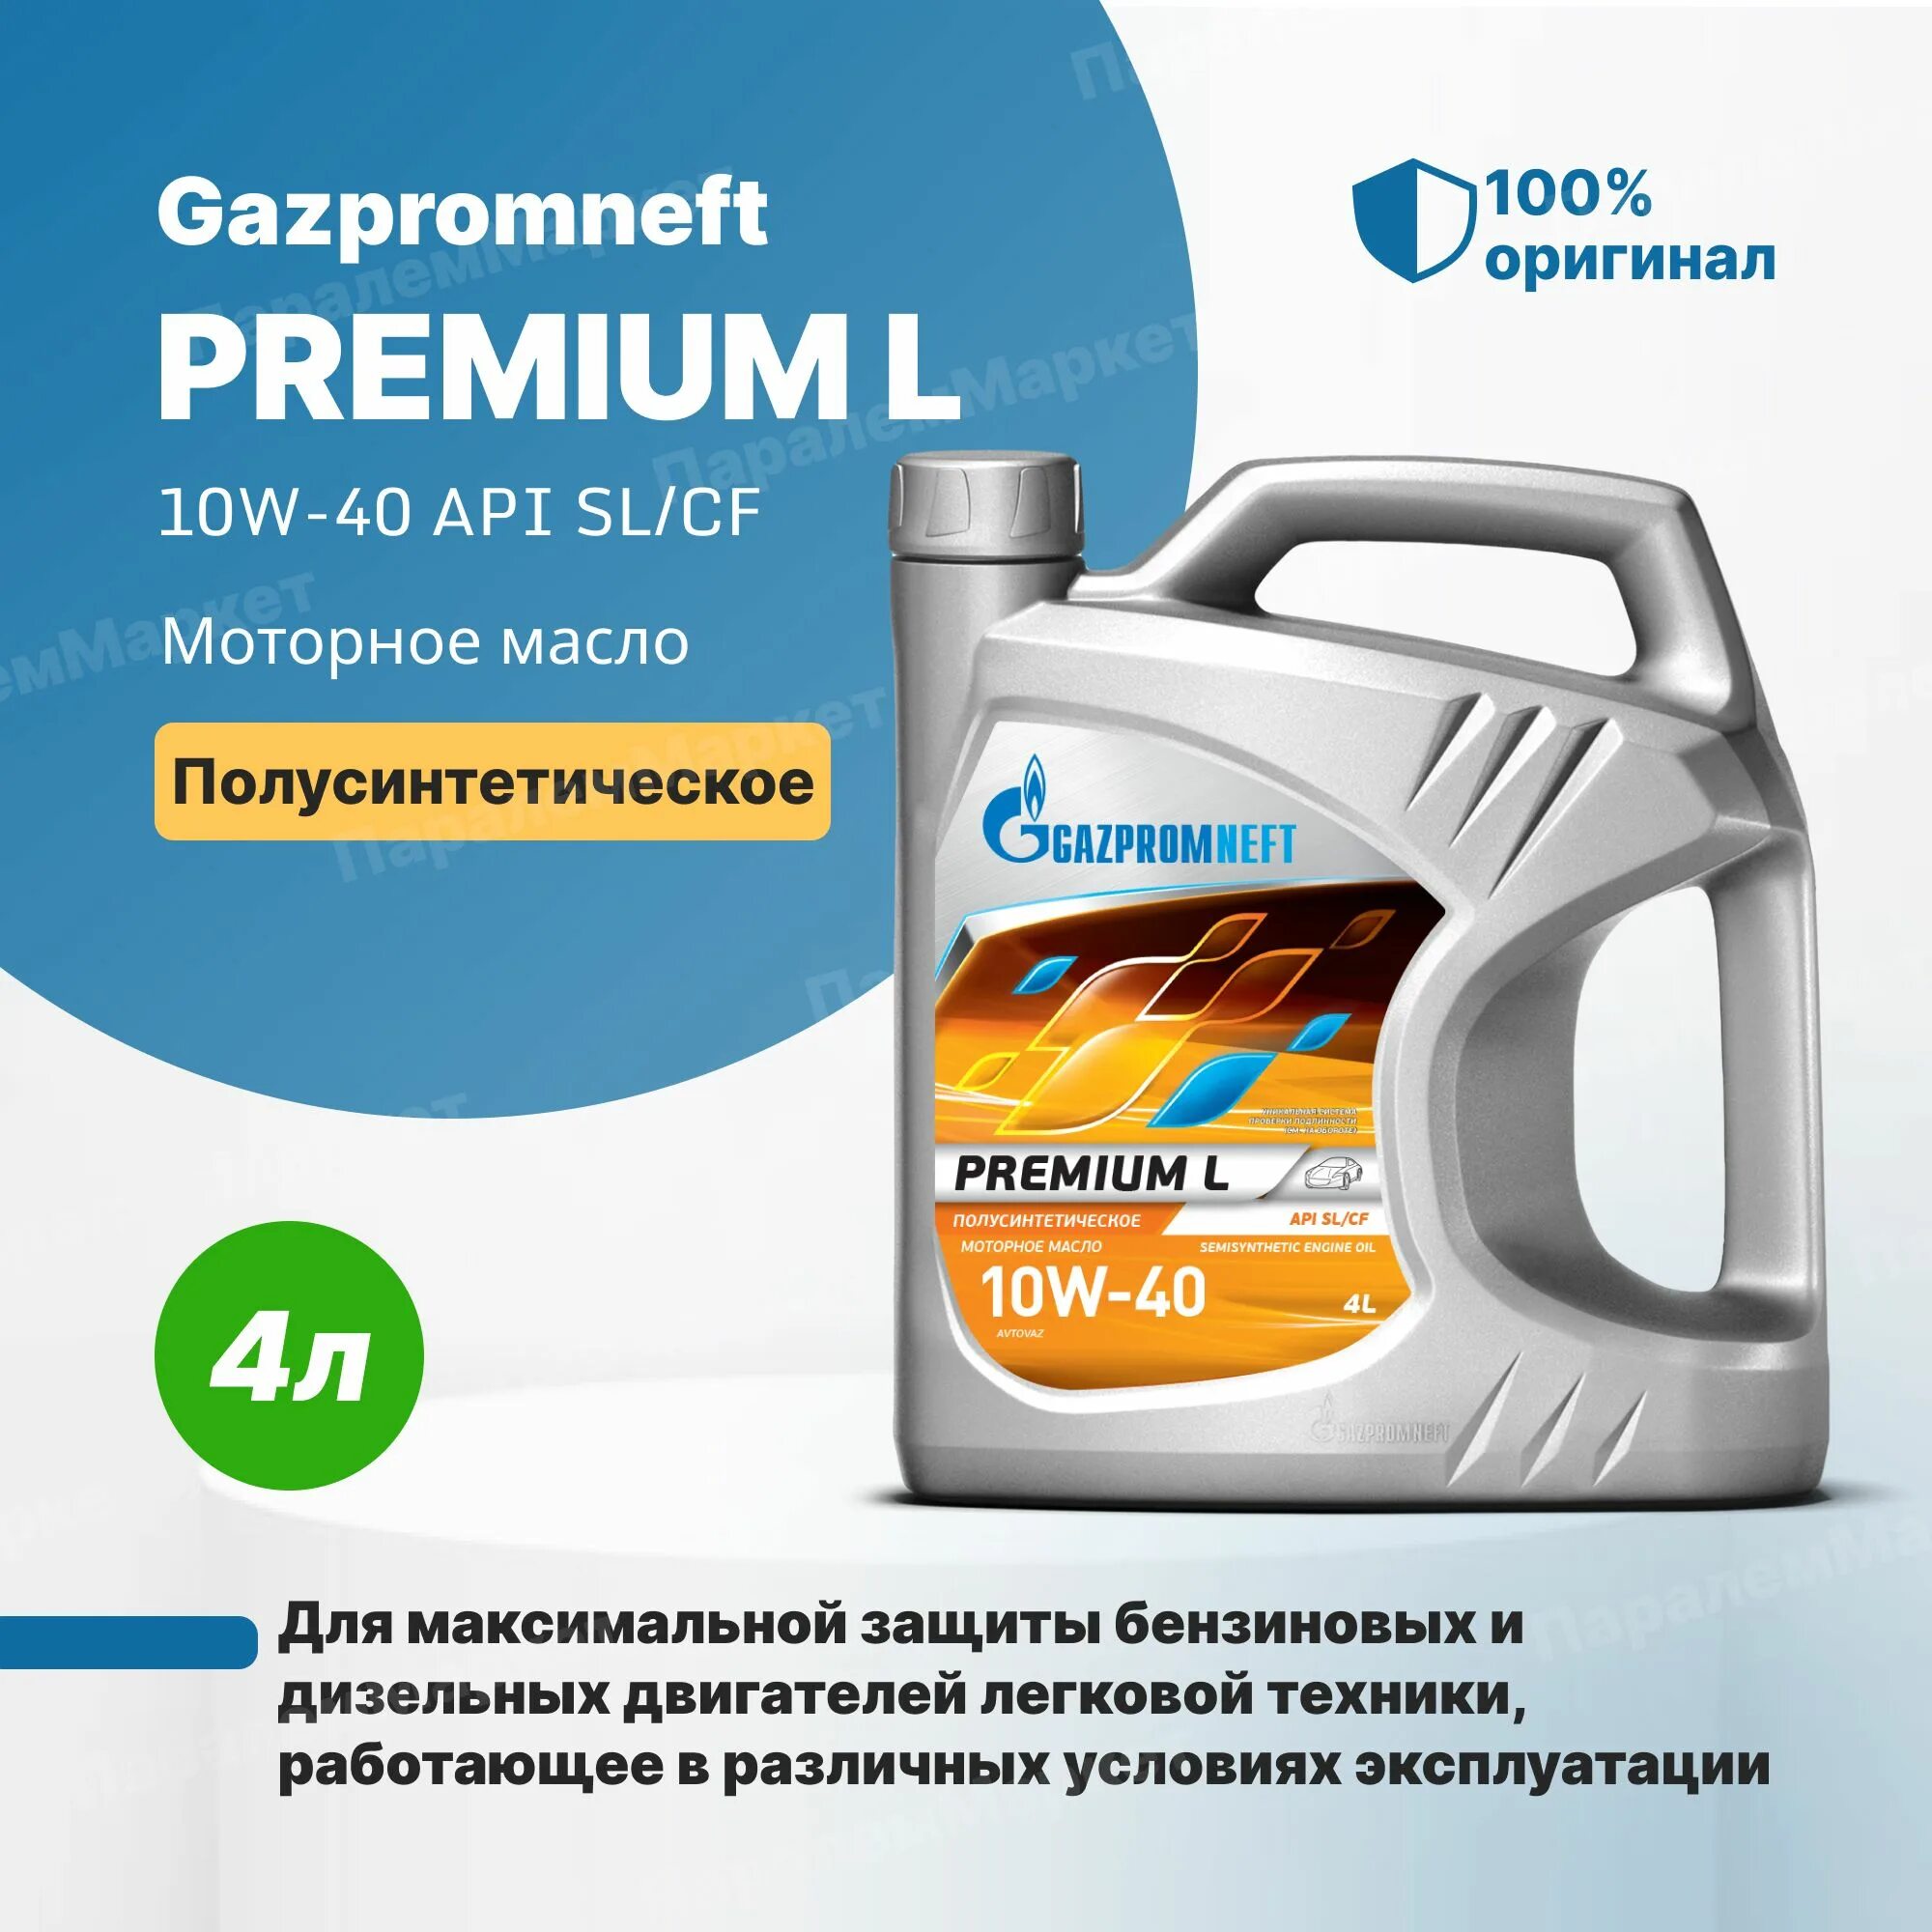 Gazpromneft масло моторное Premium l 10w-40 полусинтетическое 4 л. Газпромнефть премиум л 10w-40. Масло Газпромнефть 10w 40 премиум л. Залил масло газпромнефть